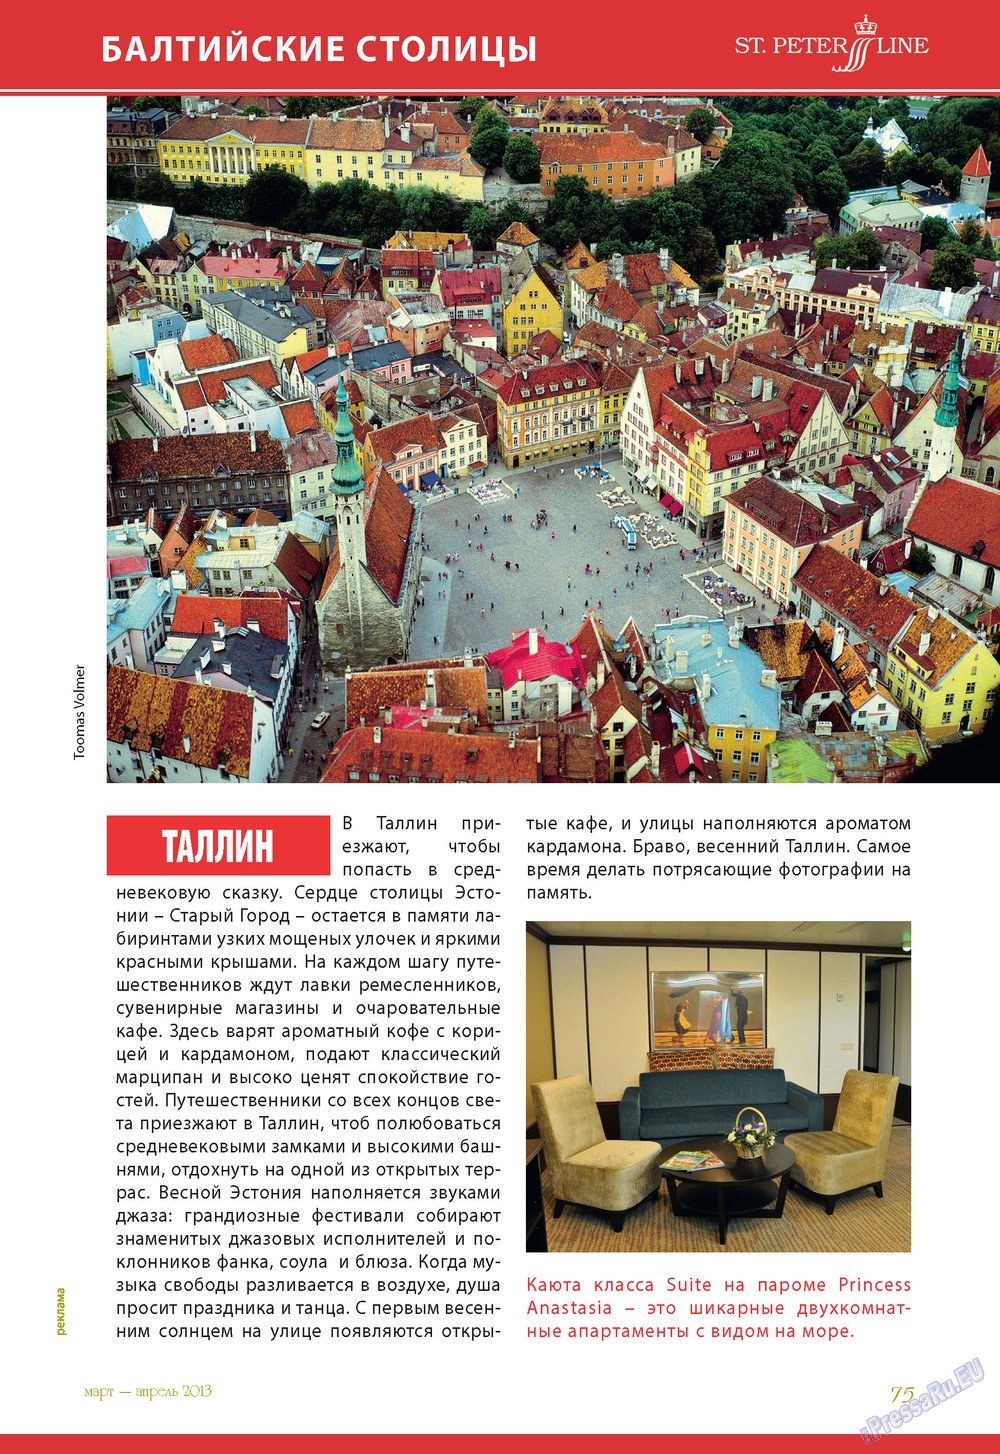 Le Voyageur (журнал). 2013 год, номер 25, стр. 77